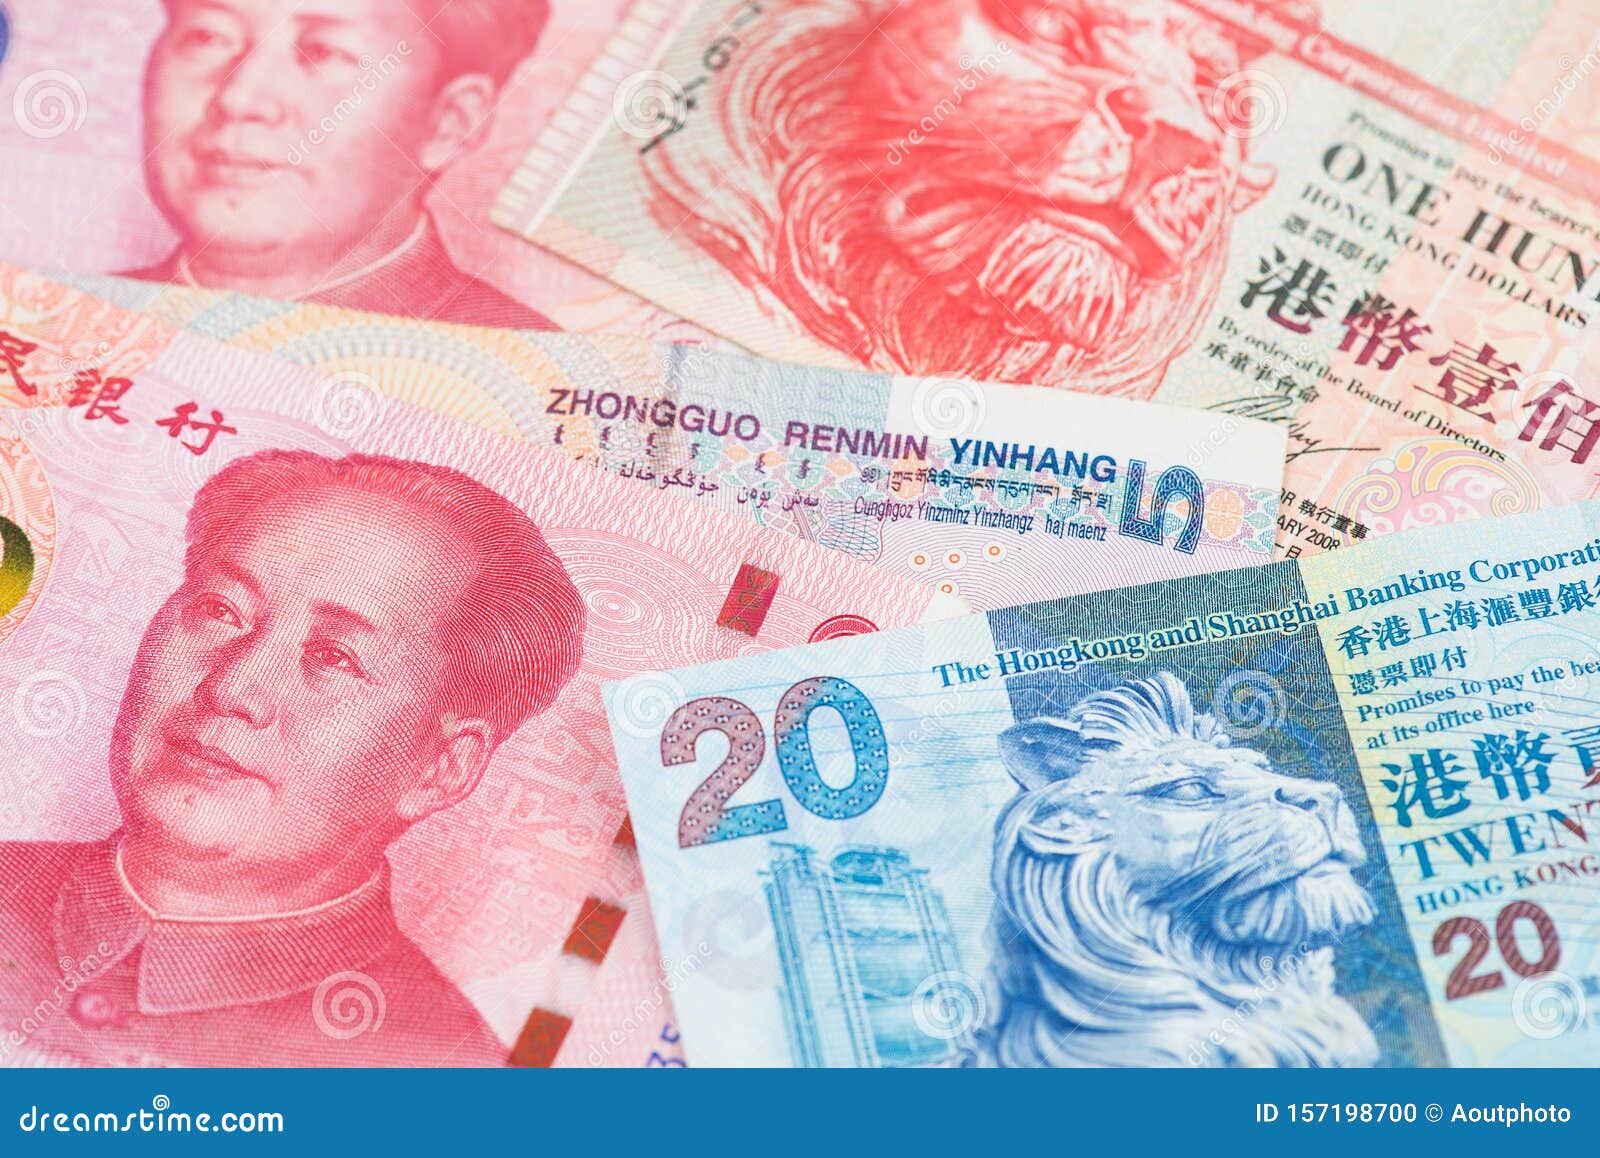 899 hkd в рублях. Гонконгский доллар и юань. Китайская валюта. Гонконгский доллар к рублю. Гонконгский доллар в рубли.